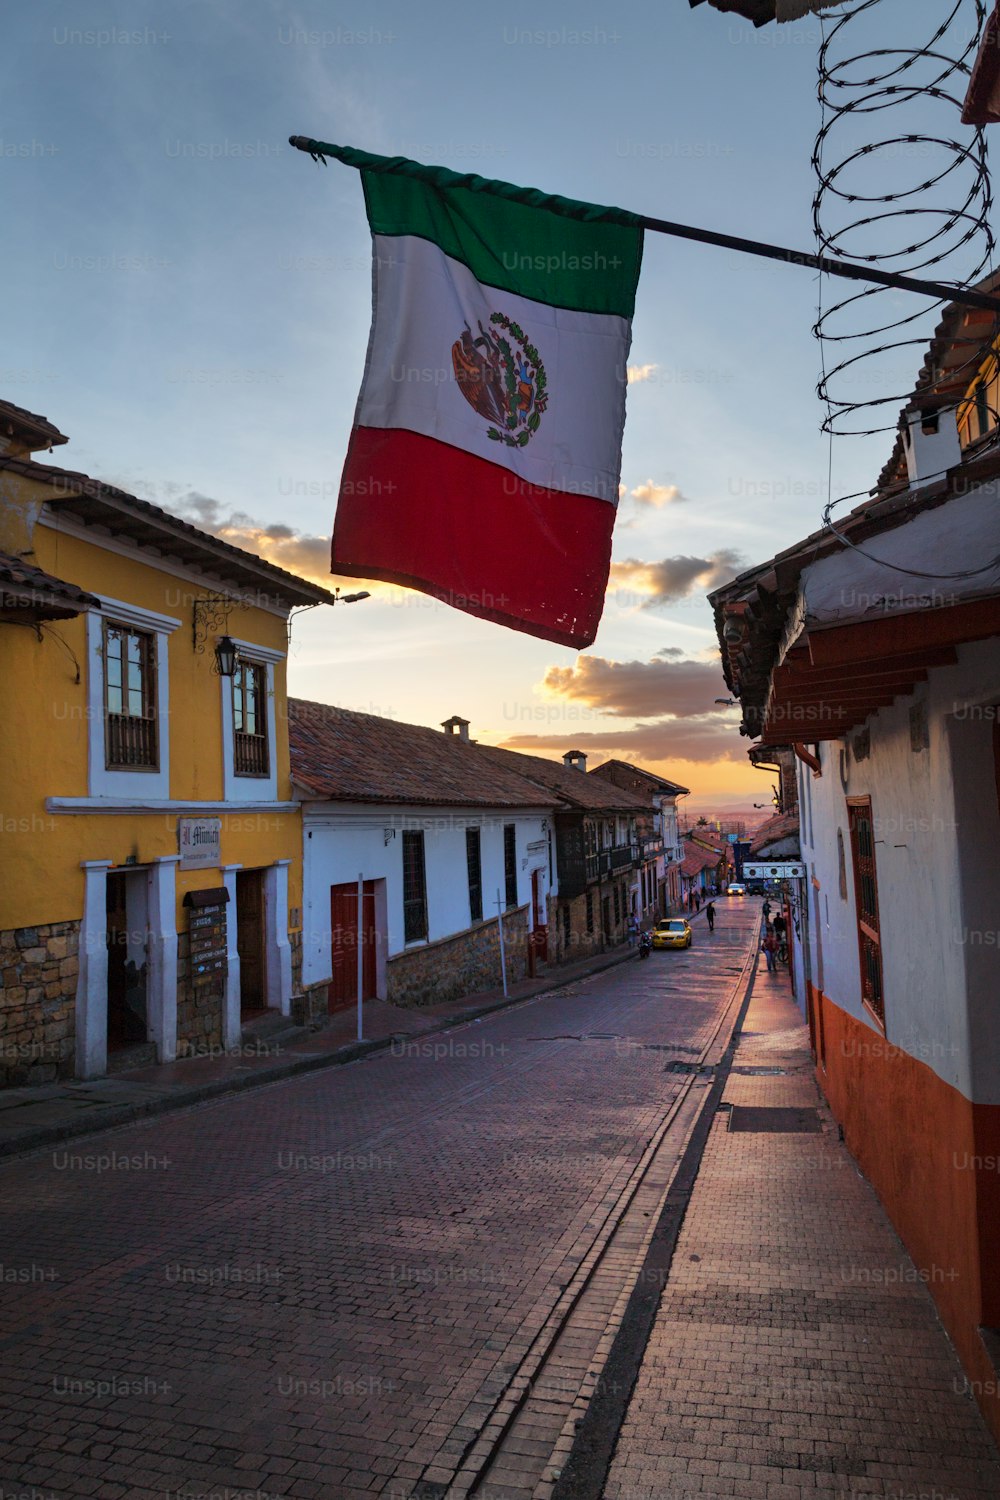 La bandiera messicana su una strada di ciottoli nel quartiere Candelaria di Bogotà, Colombia